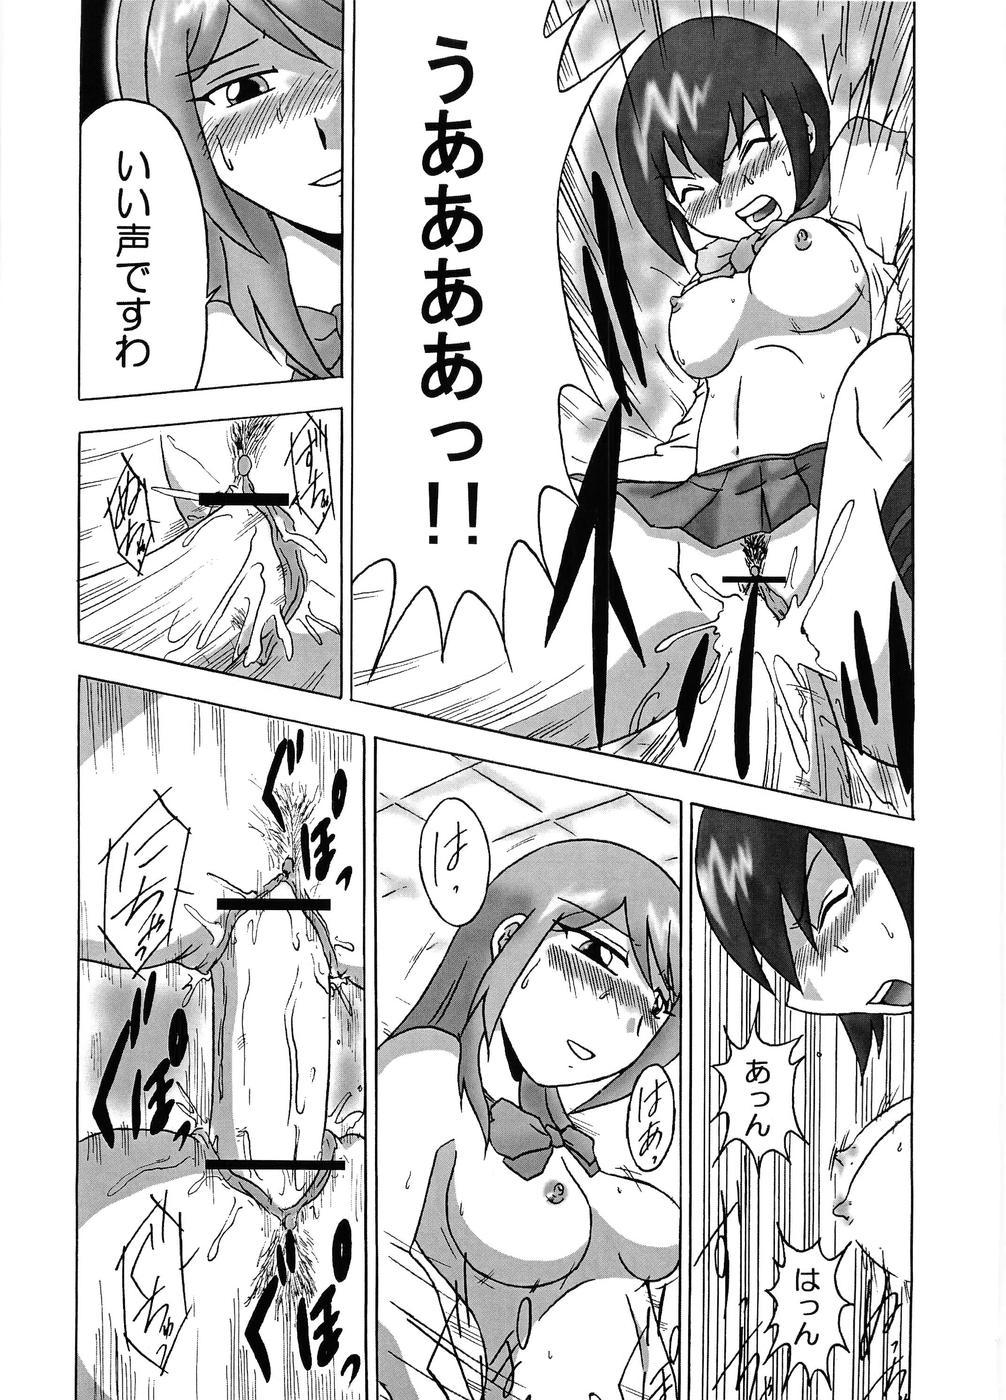 Camgirls Gokujou Seidokai – Gokujou seitokai Phat Ass - Page 1